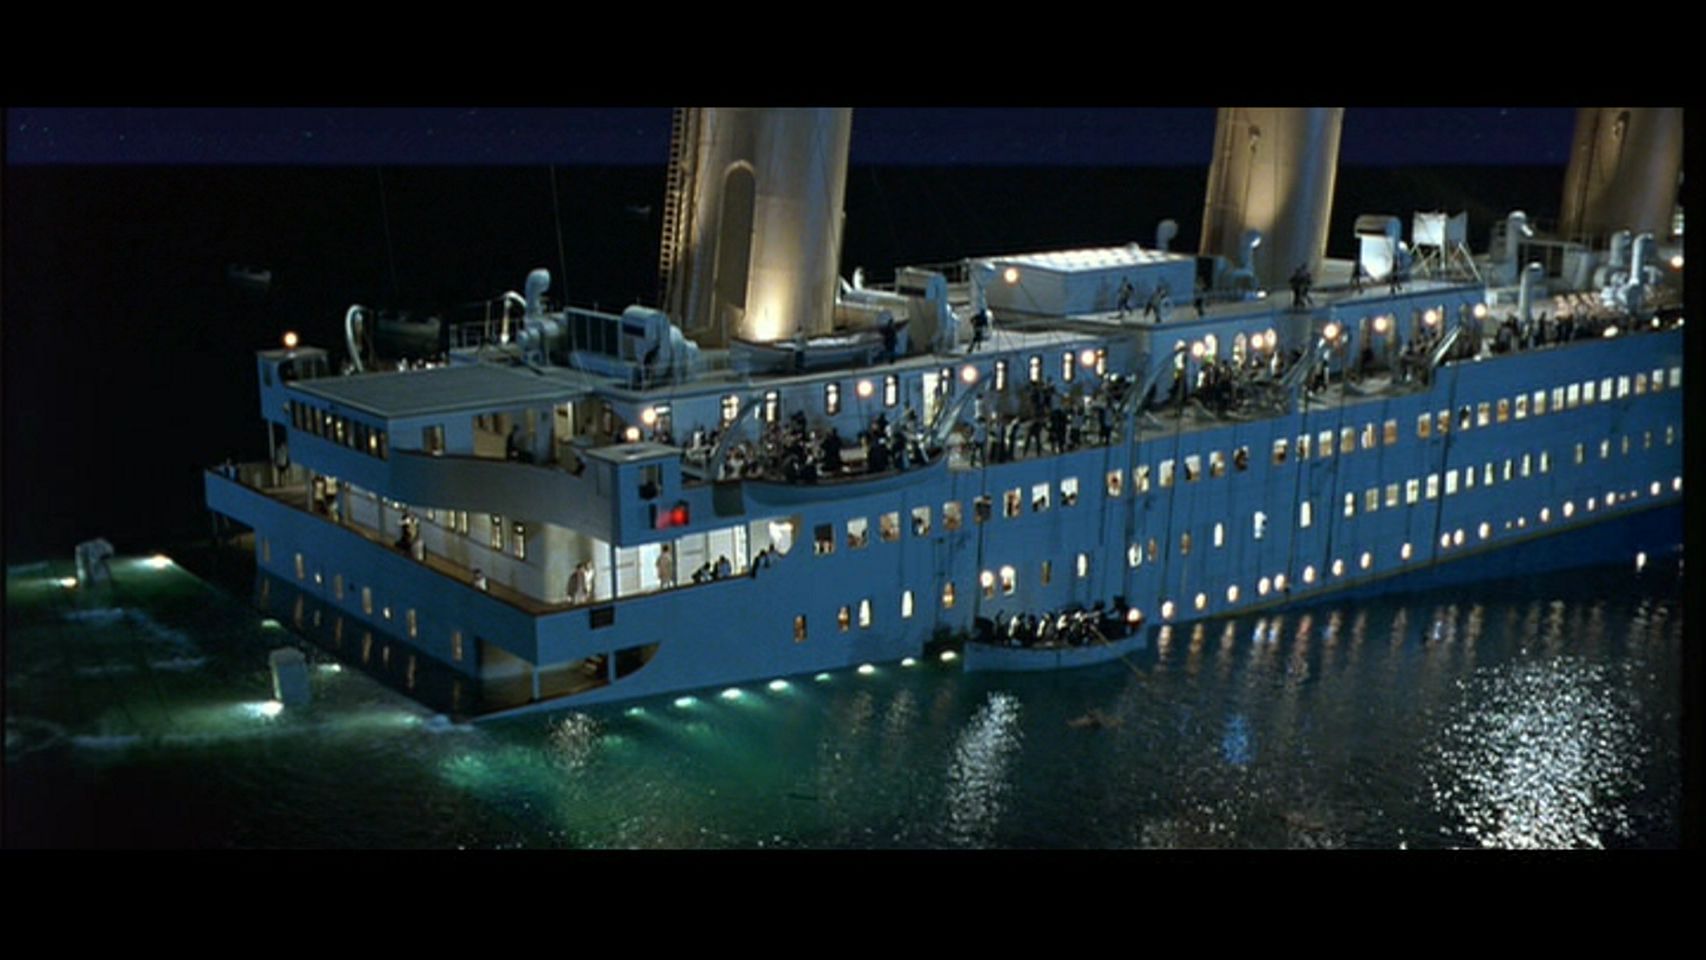 Titanic [1997] - Titanic Image (22287252) - Fanpop1706 x 960